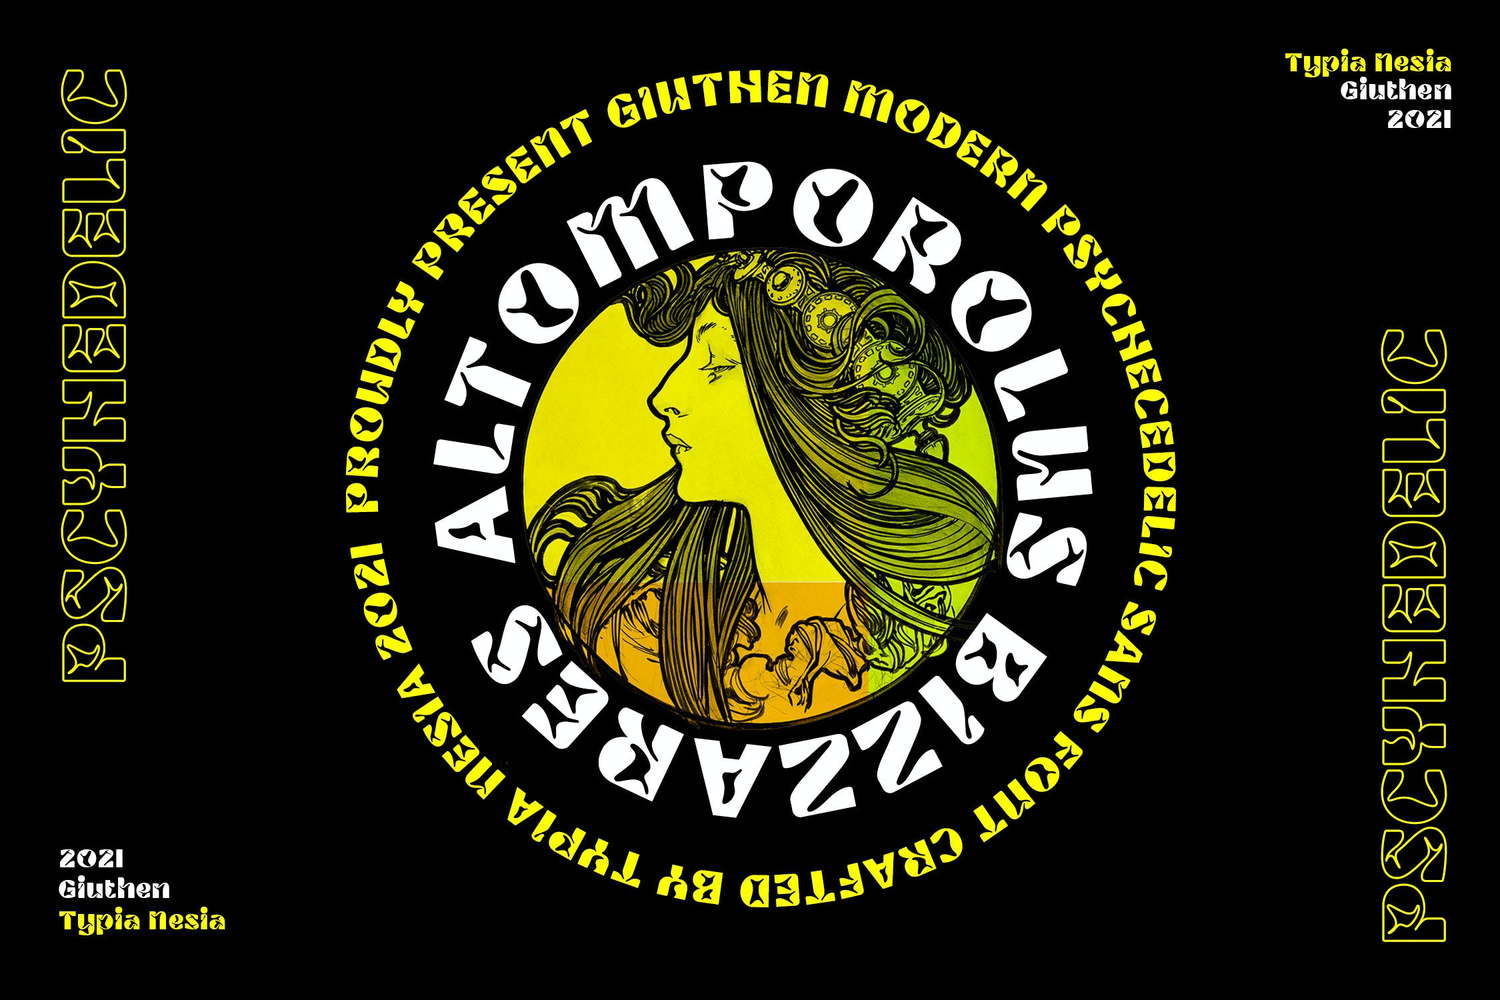 3740 复古时尚潮流酸性逆反差潮牌logo音乐游戏海报英文字体Giuthen – Modern Psychedelic Sans Serif